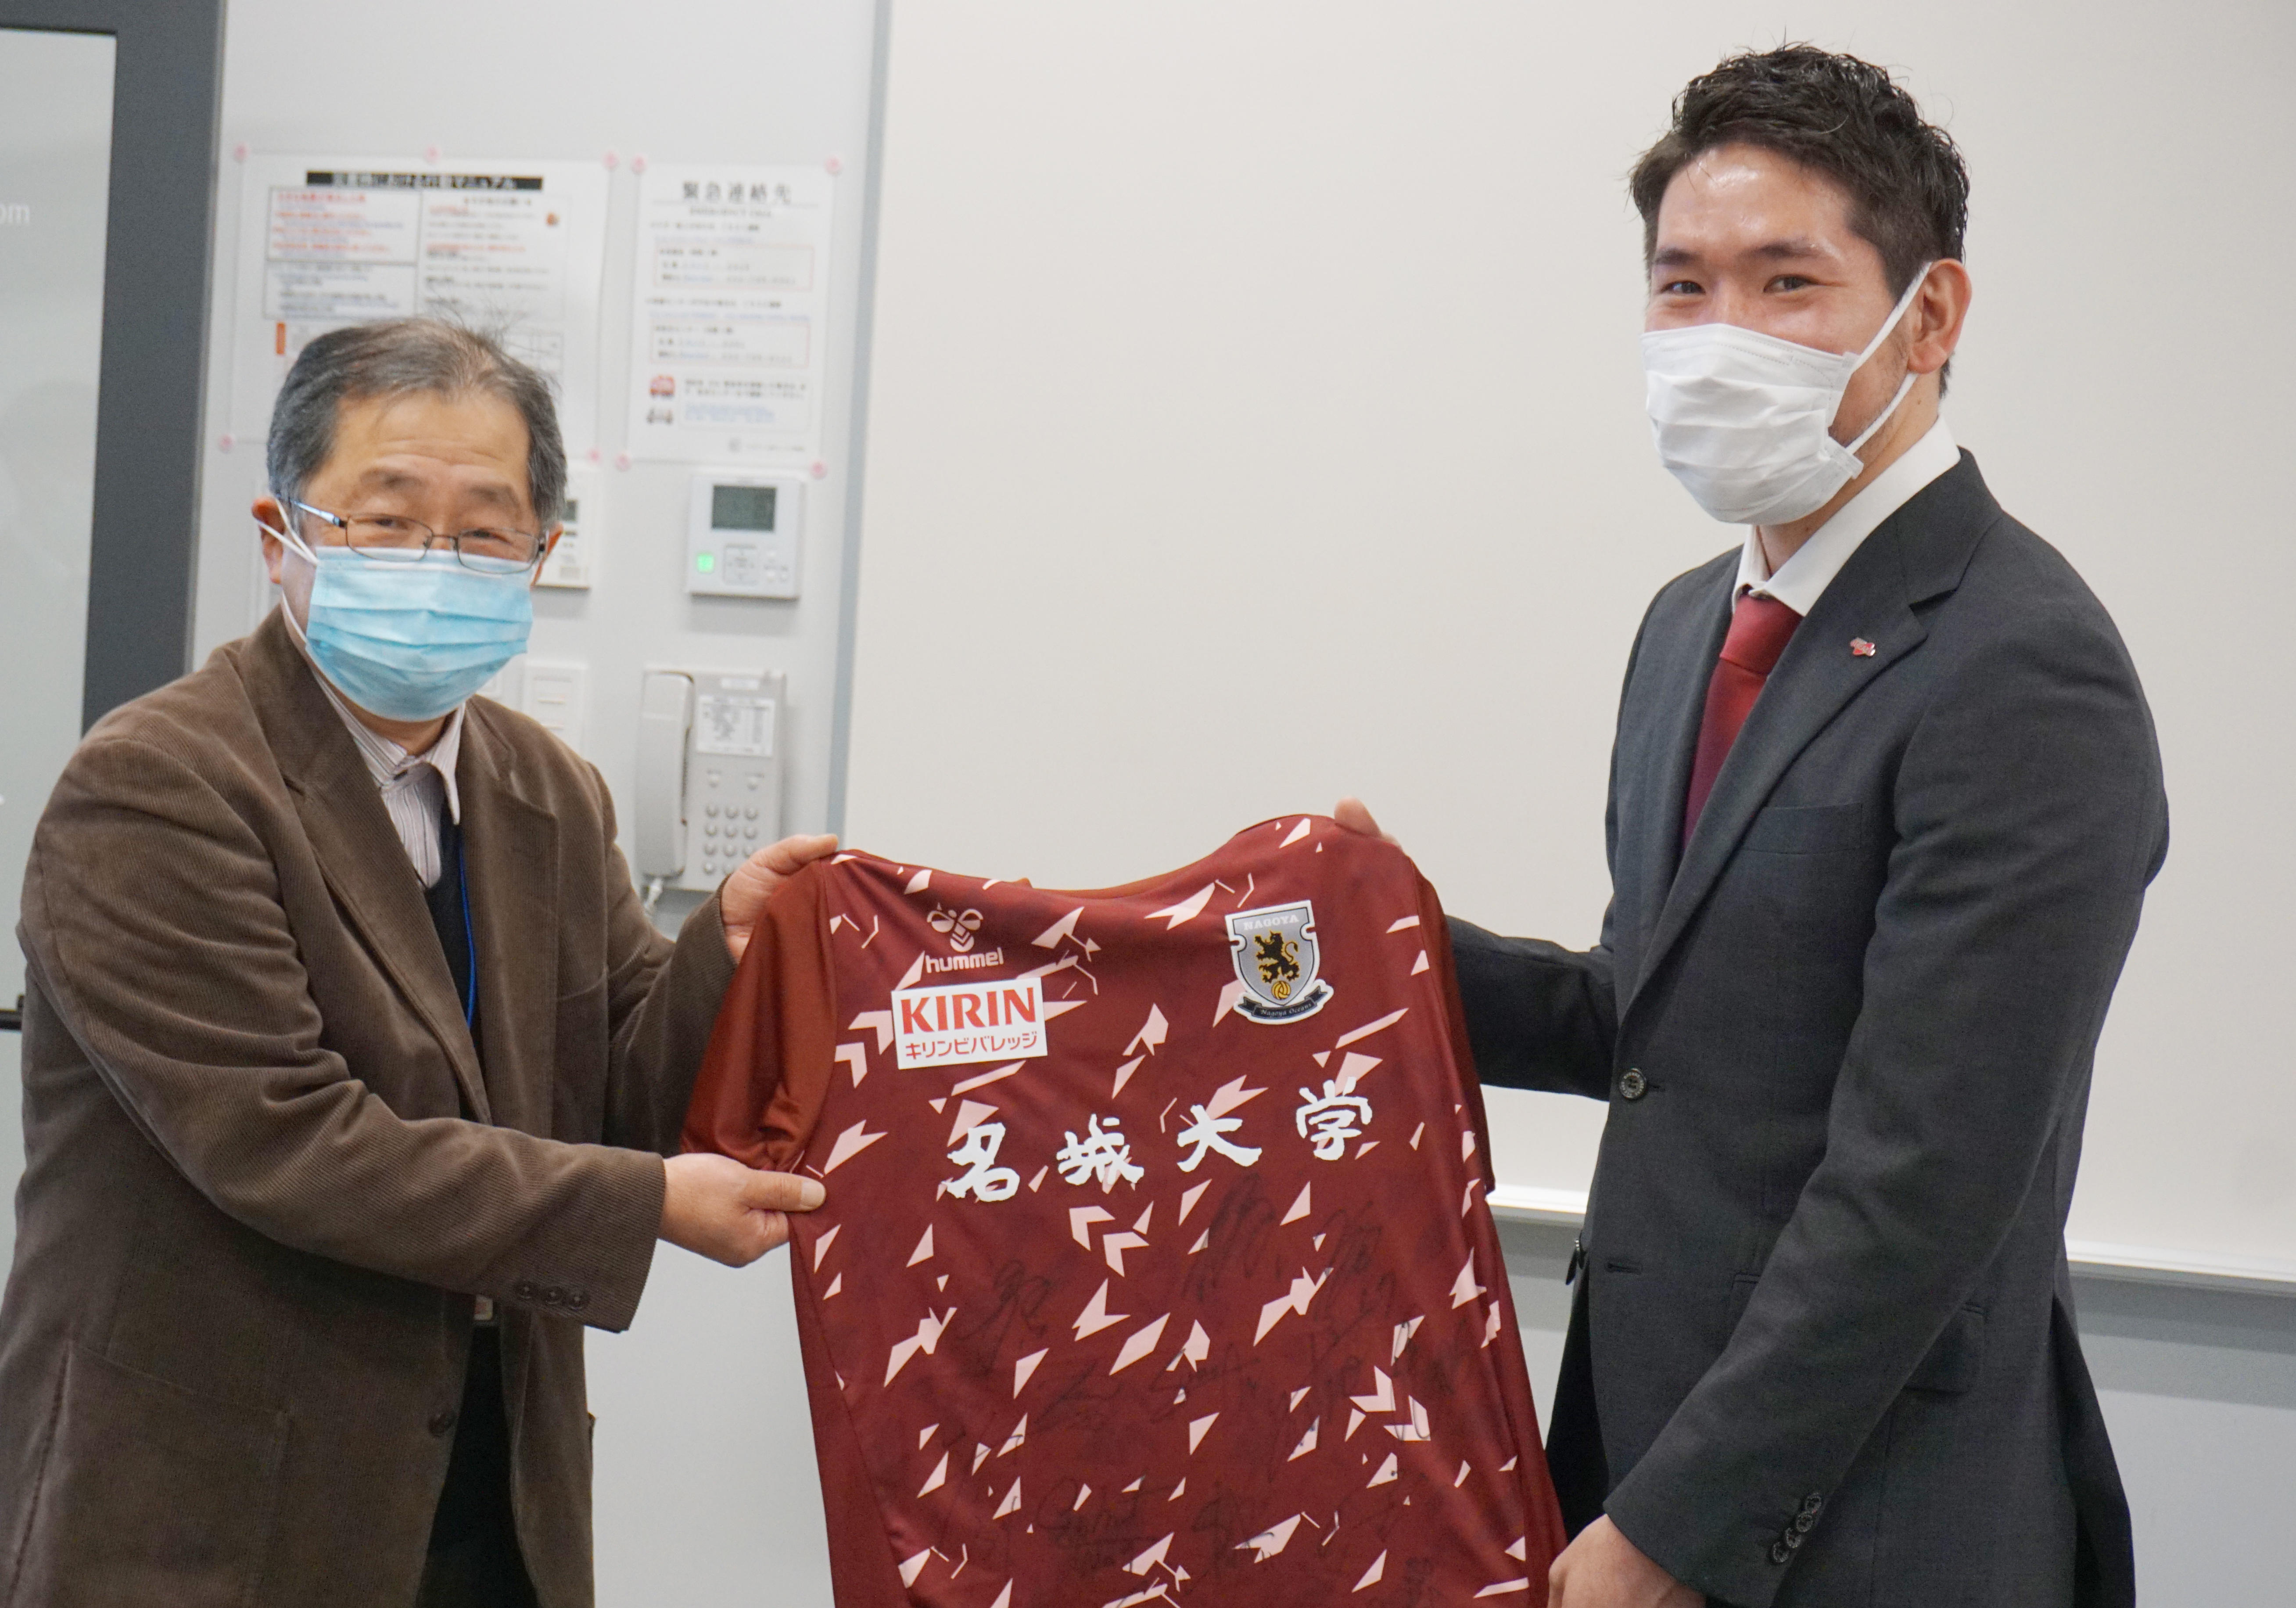 プロフットサルチーム「名古屋オーシャンズ」が大野副学長を表敬訪問